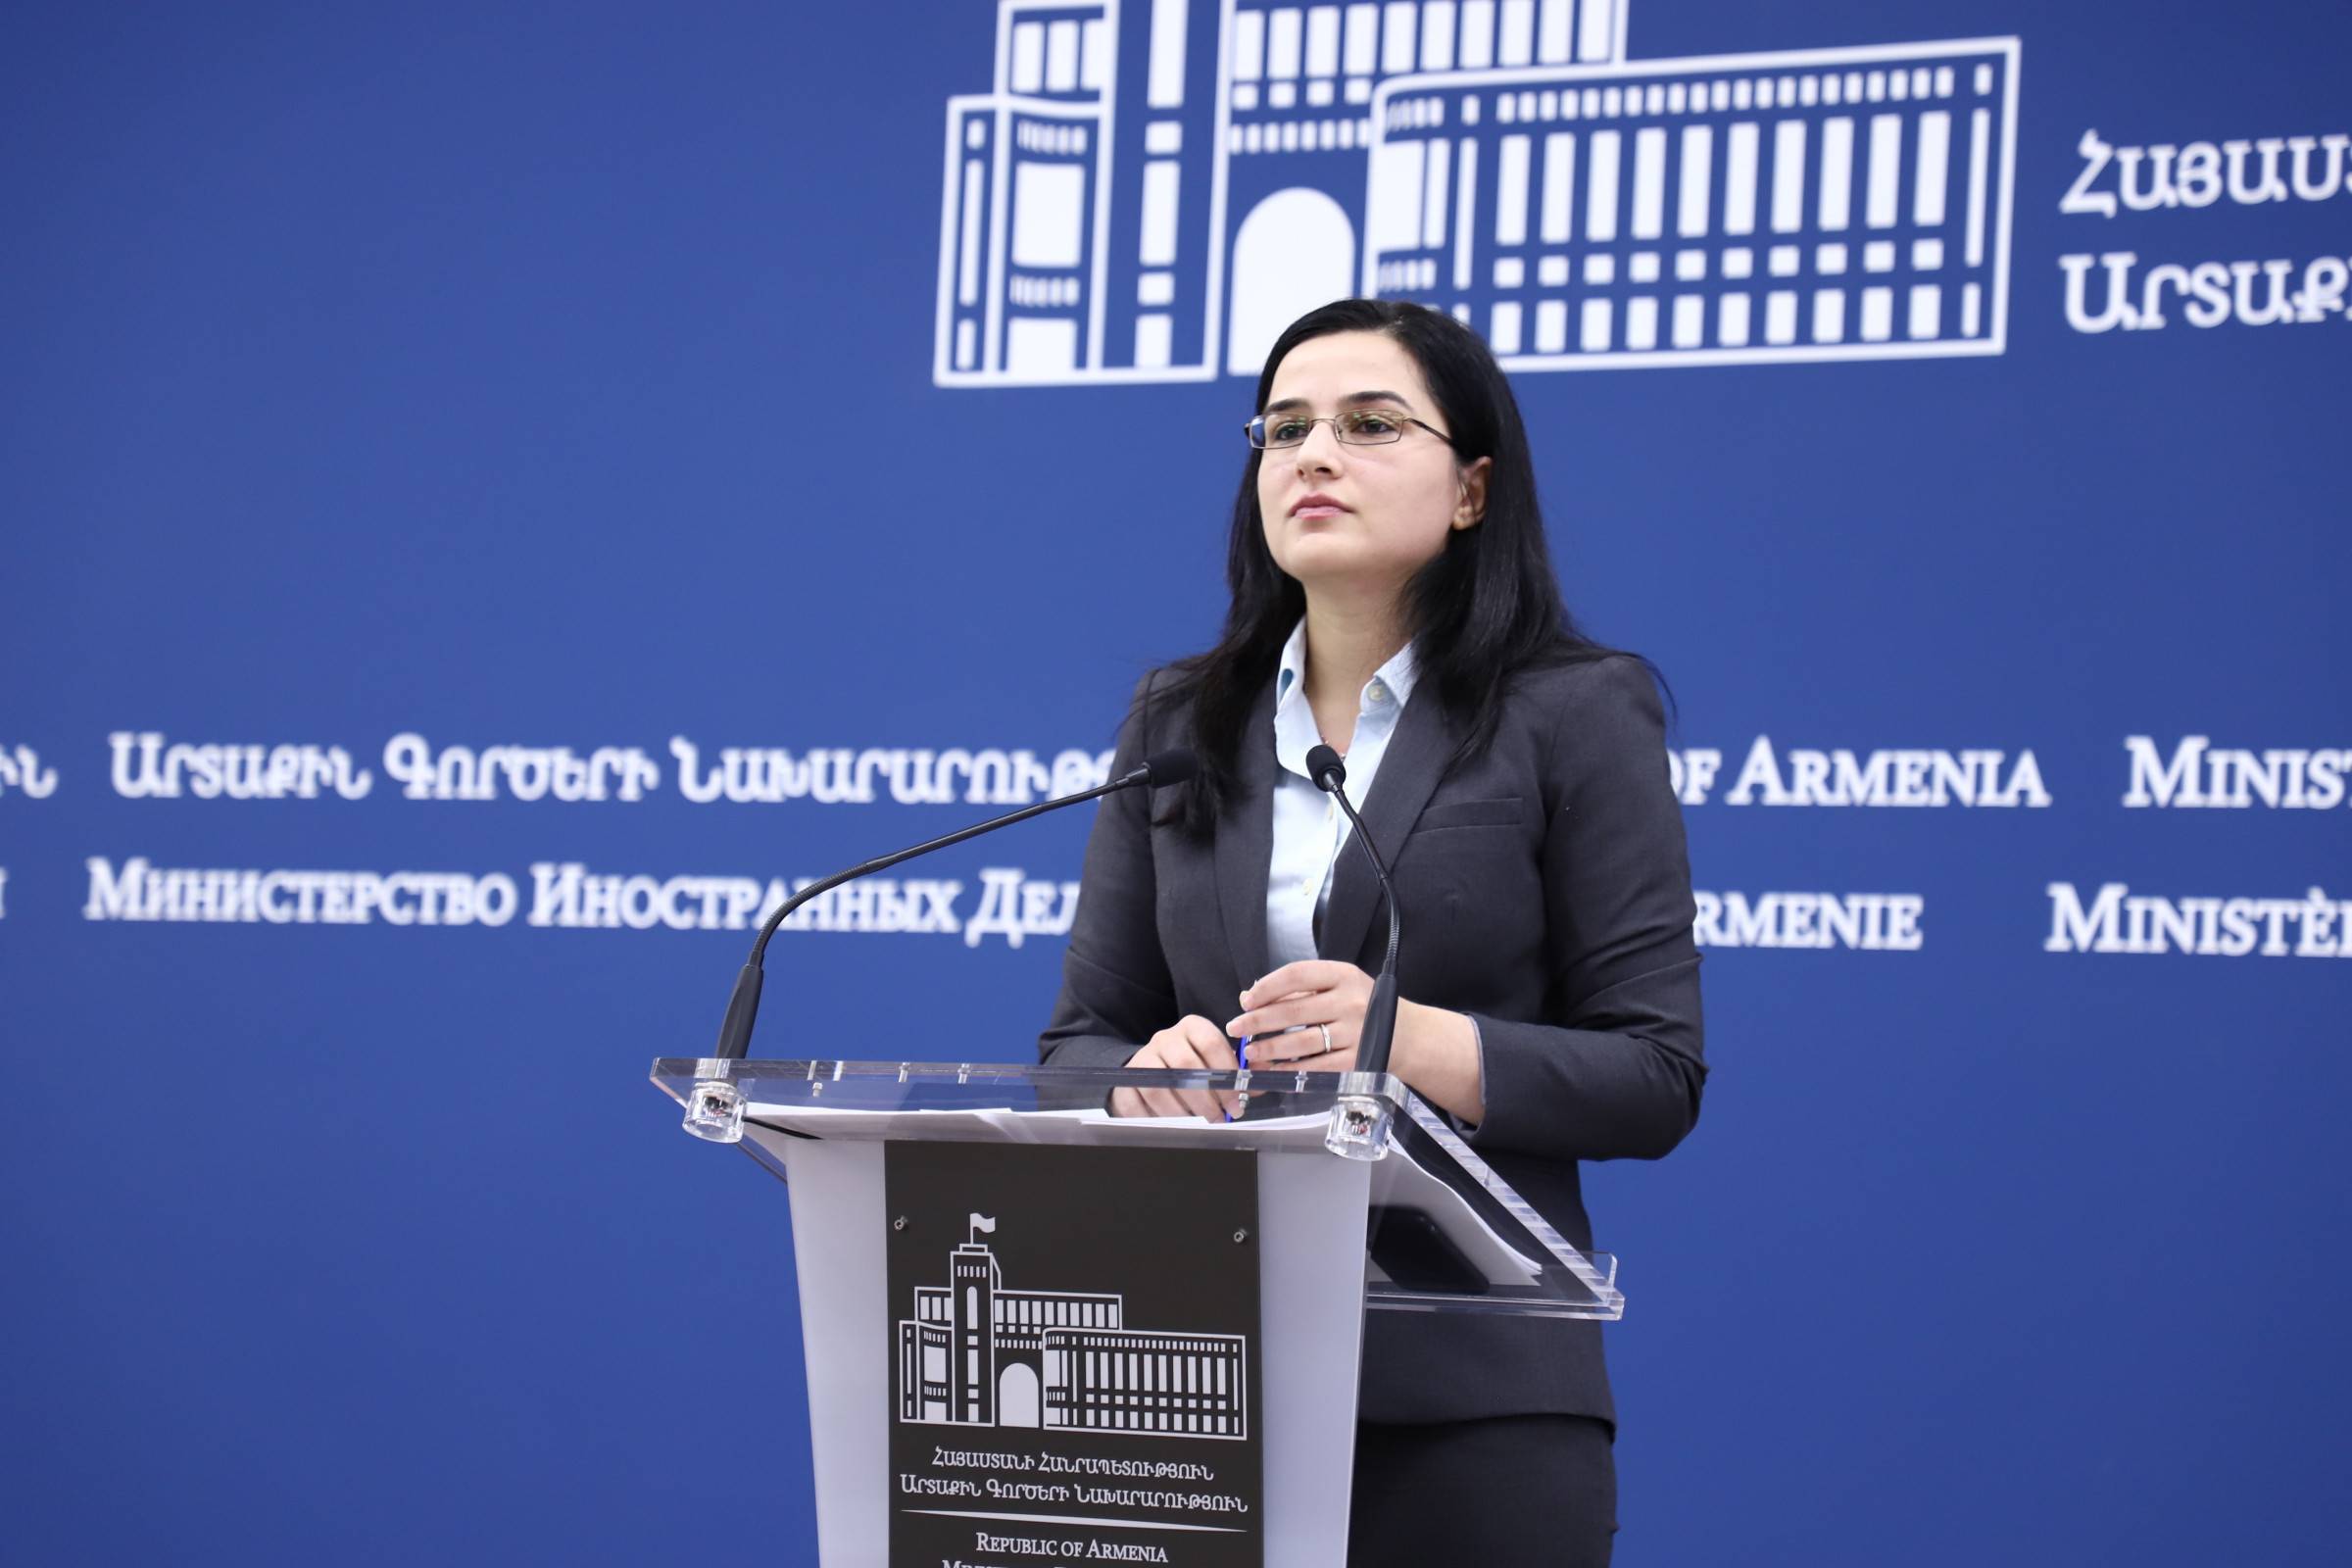 Statement by MFA Spokesperson Anna Naghdalyan on “court sentence” of Karen Ghazaryan